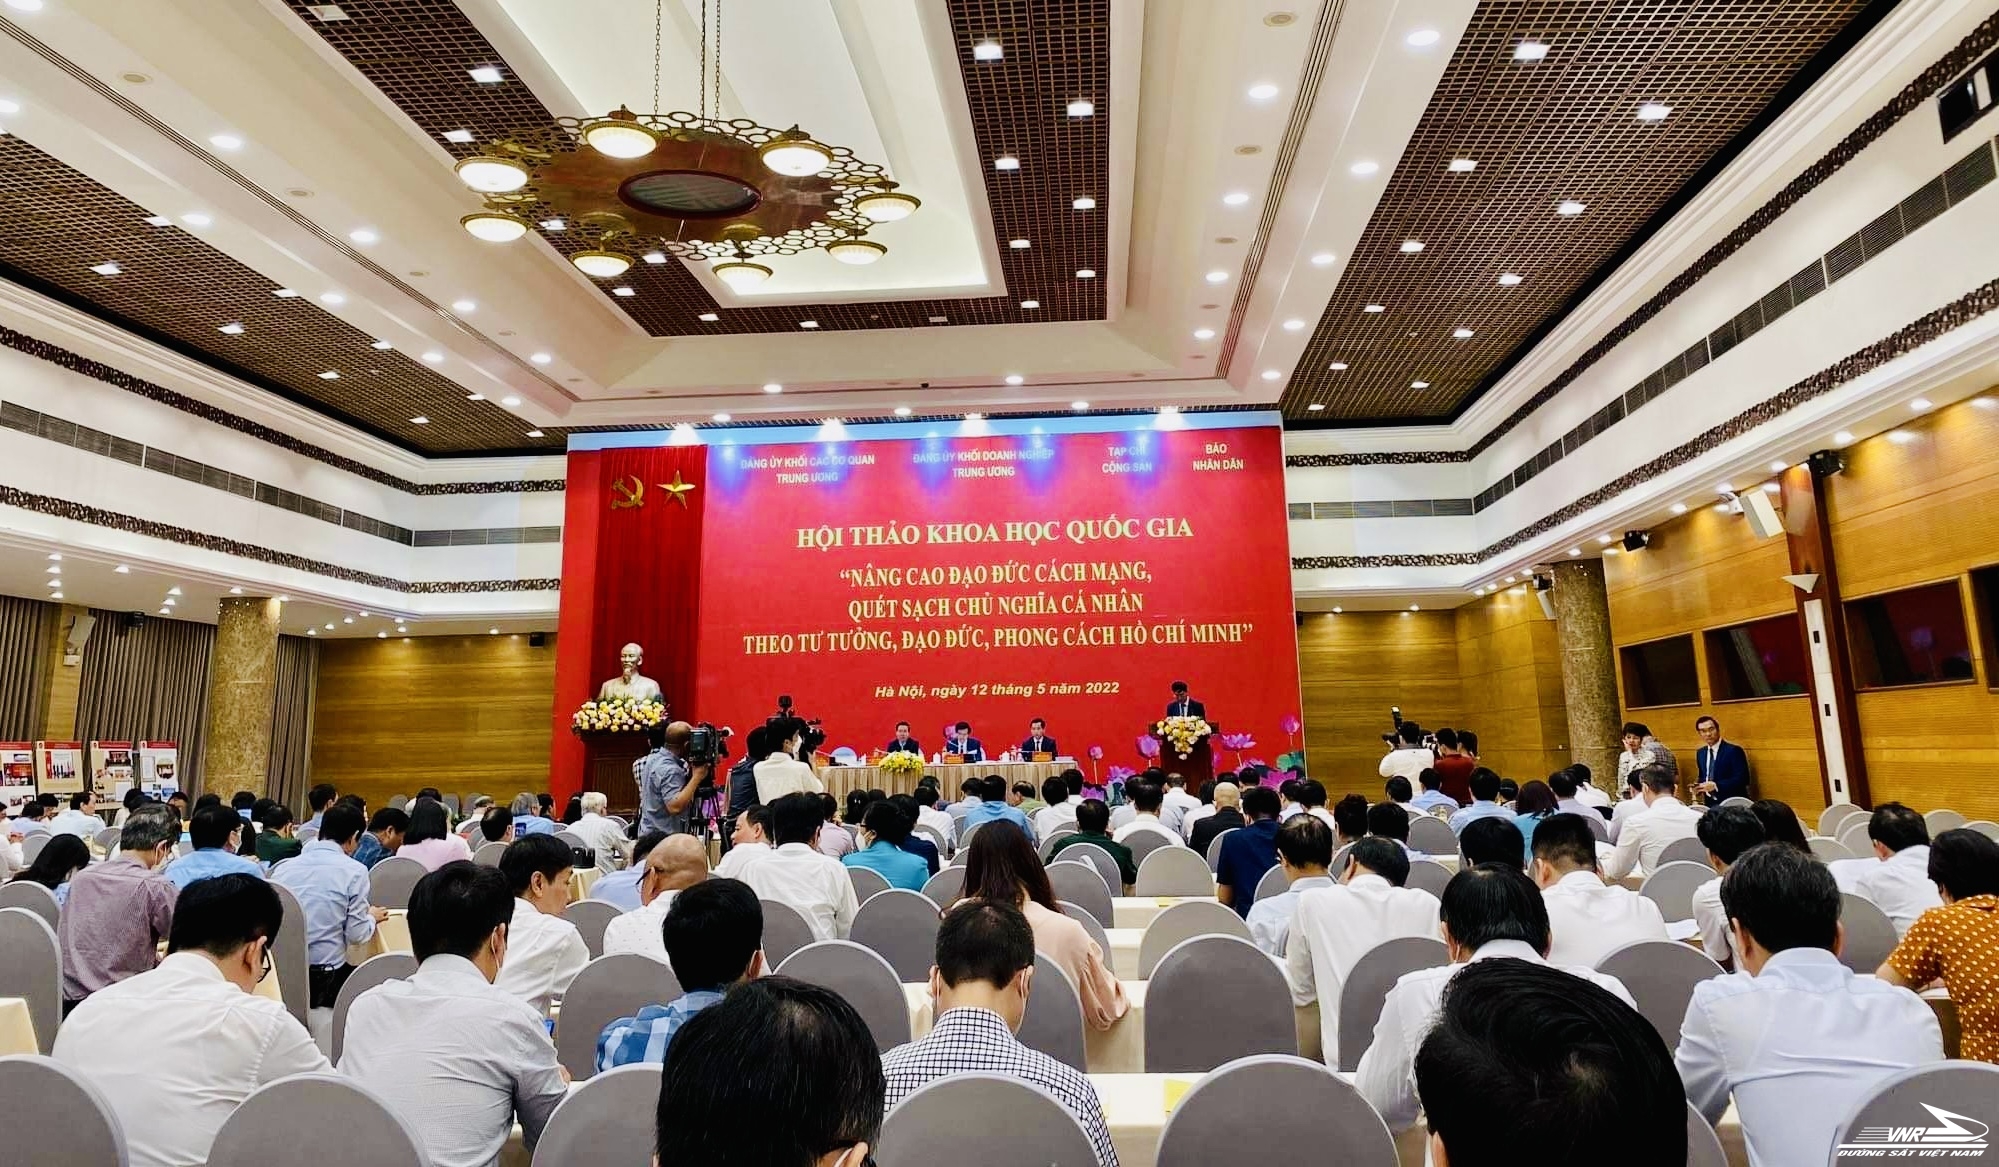 Hội thảo khoa học quốc gia “Nâng cao đạo đức cách mạng, quét sạch chủ nghĩa cá nhân theo tư tưởng, đạo đức, phong cách Hồ Chí Minh”